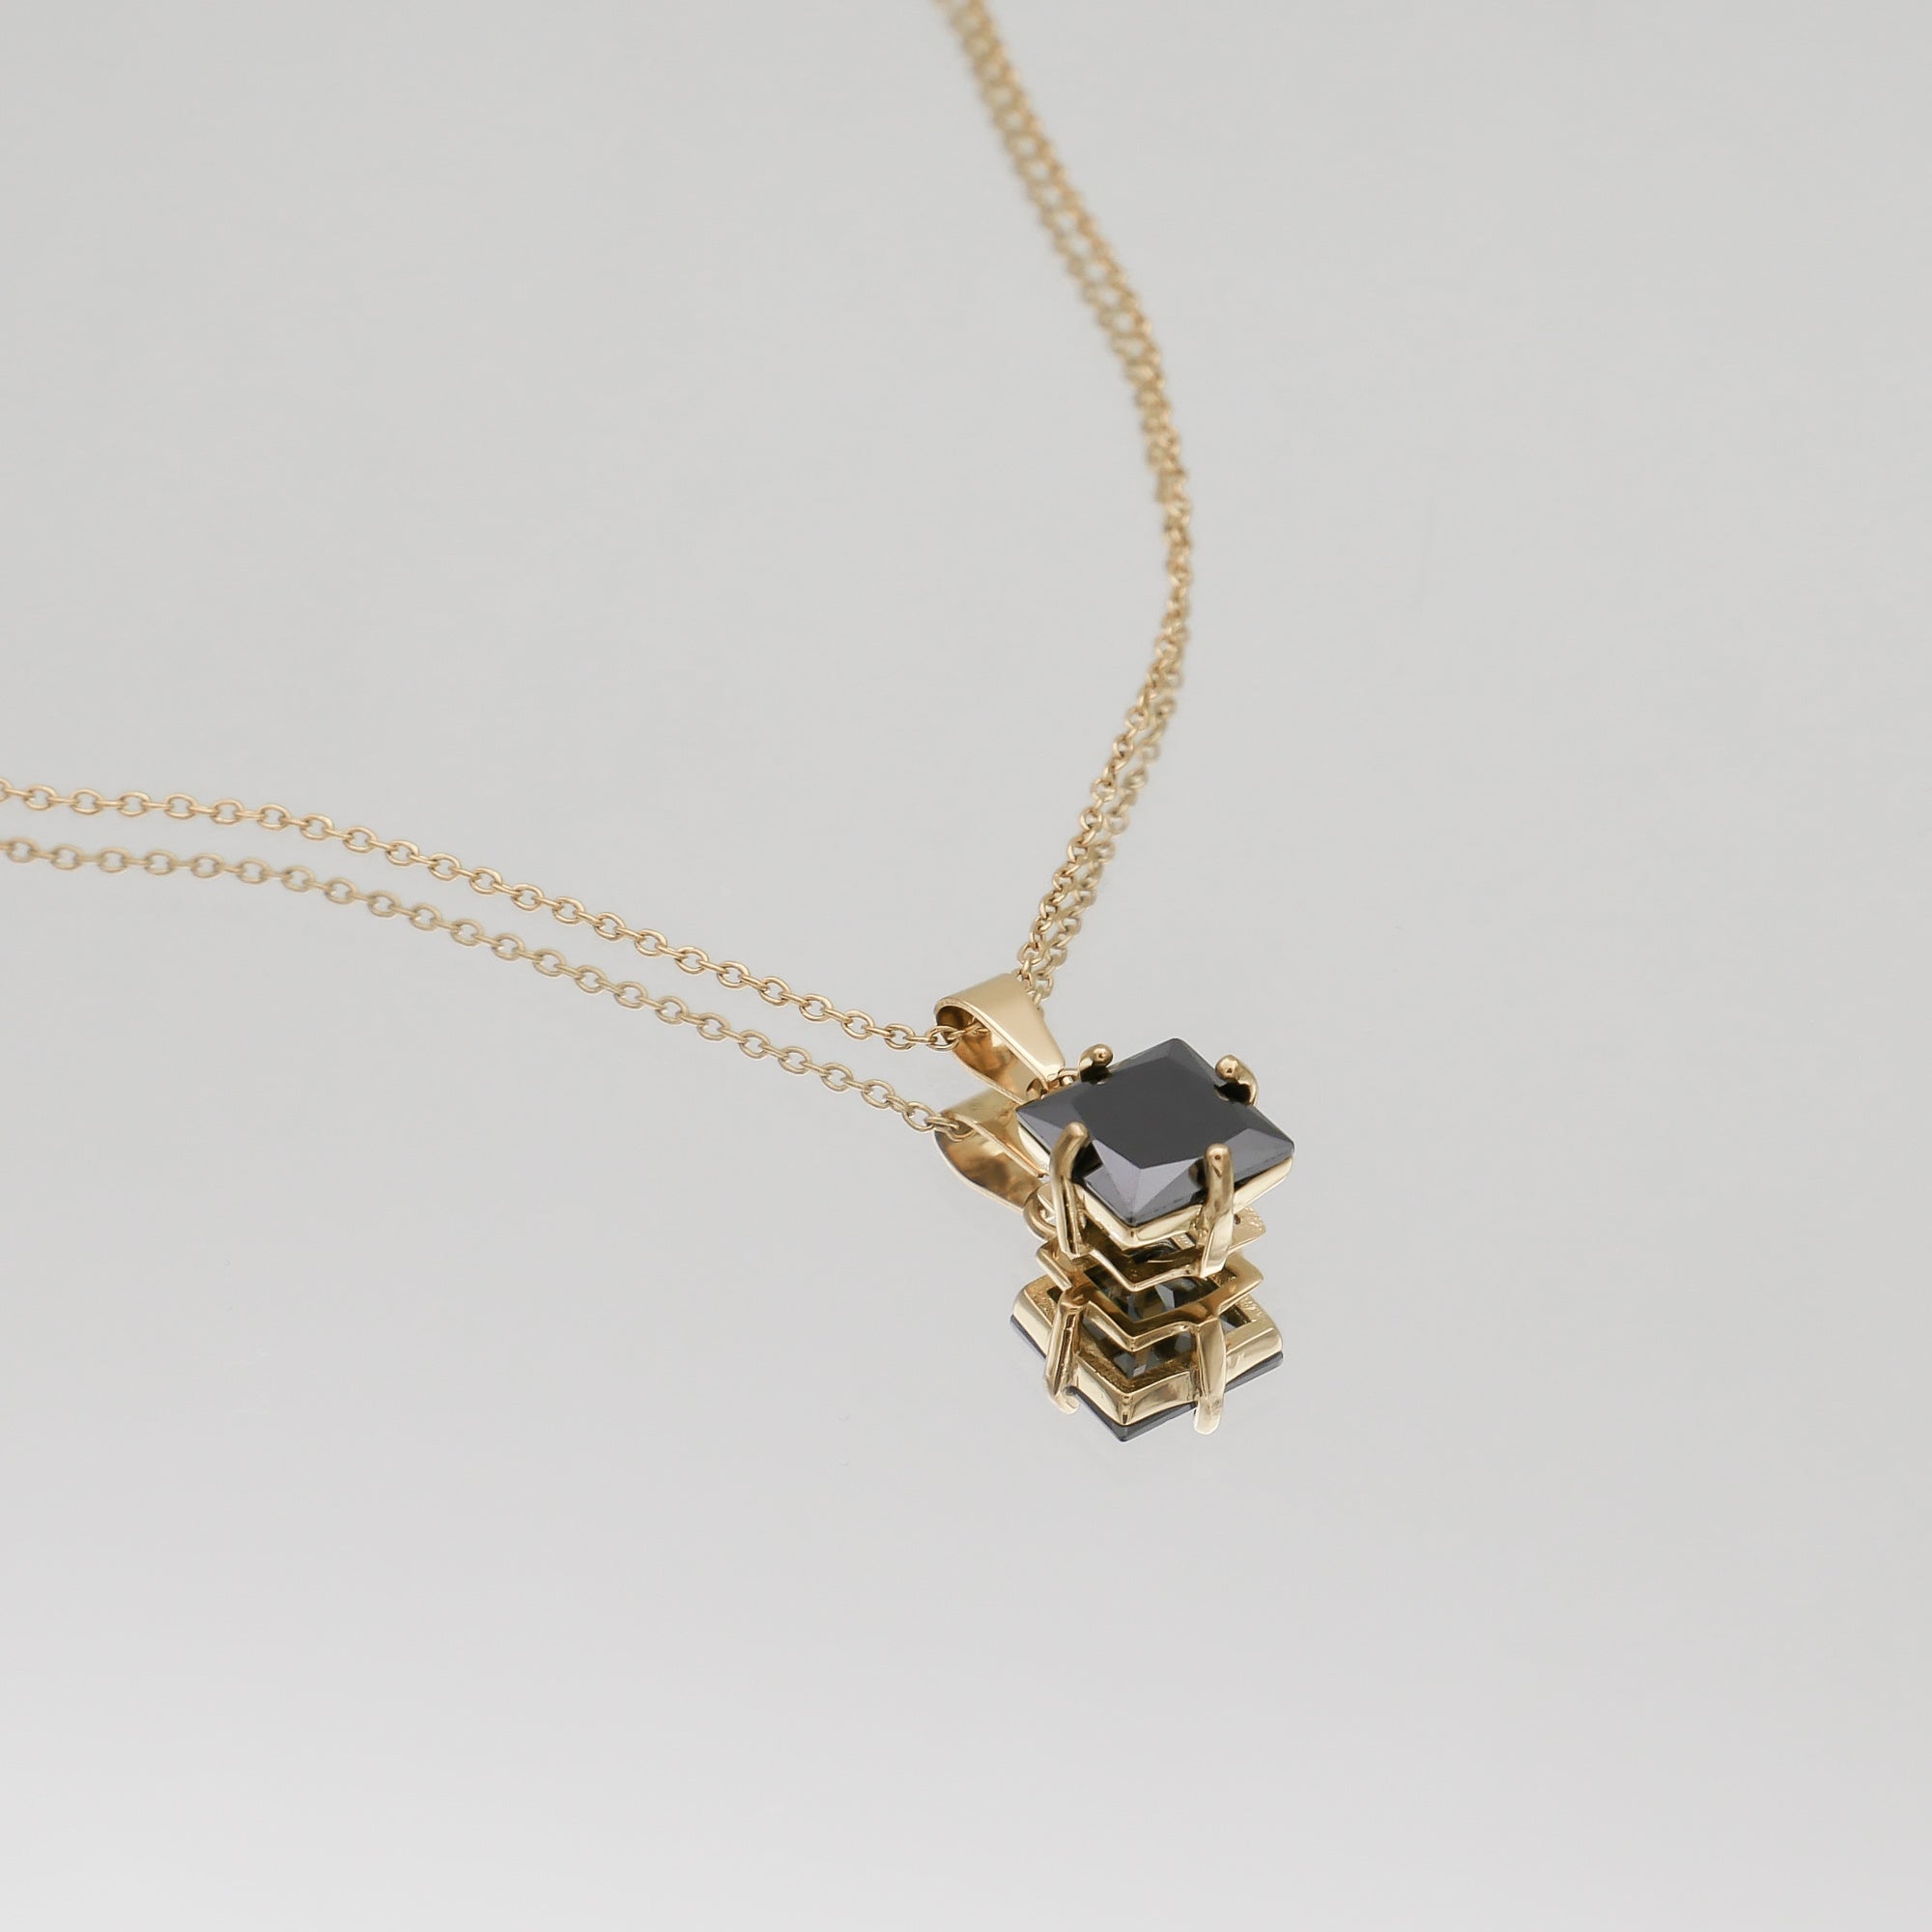 Asha Gemstone Necklace with onyx gemstone pendant